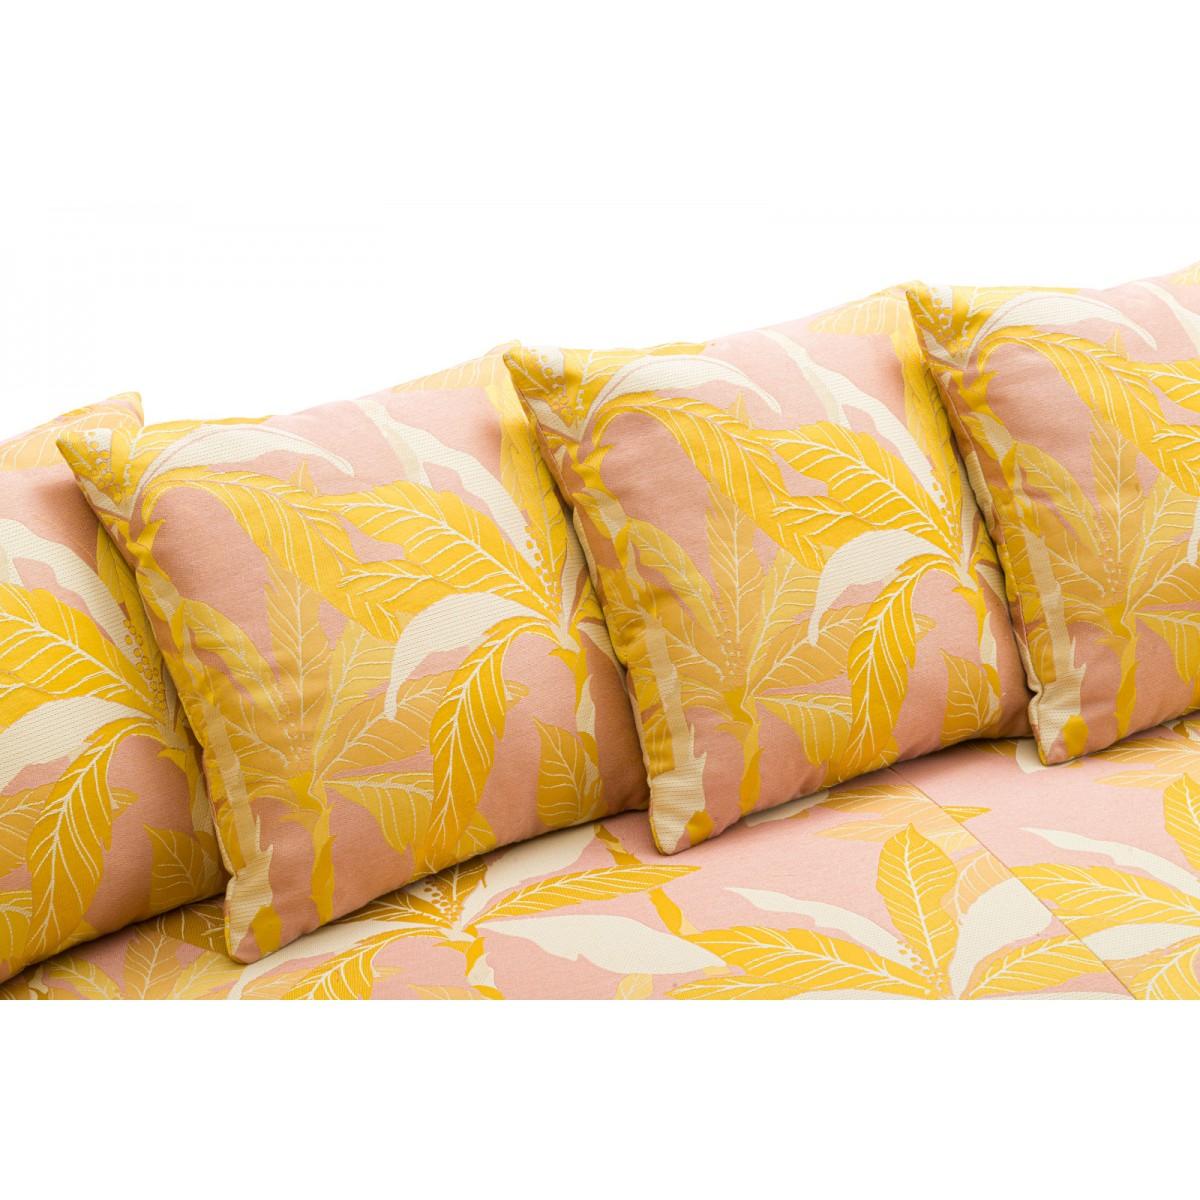 Popus Editions Graziella 3 Seater Sofa in Pink Miami Jacquard Fabric For Sale 2